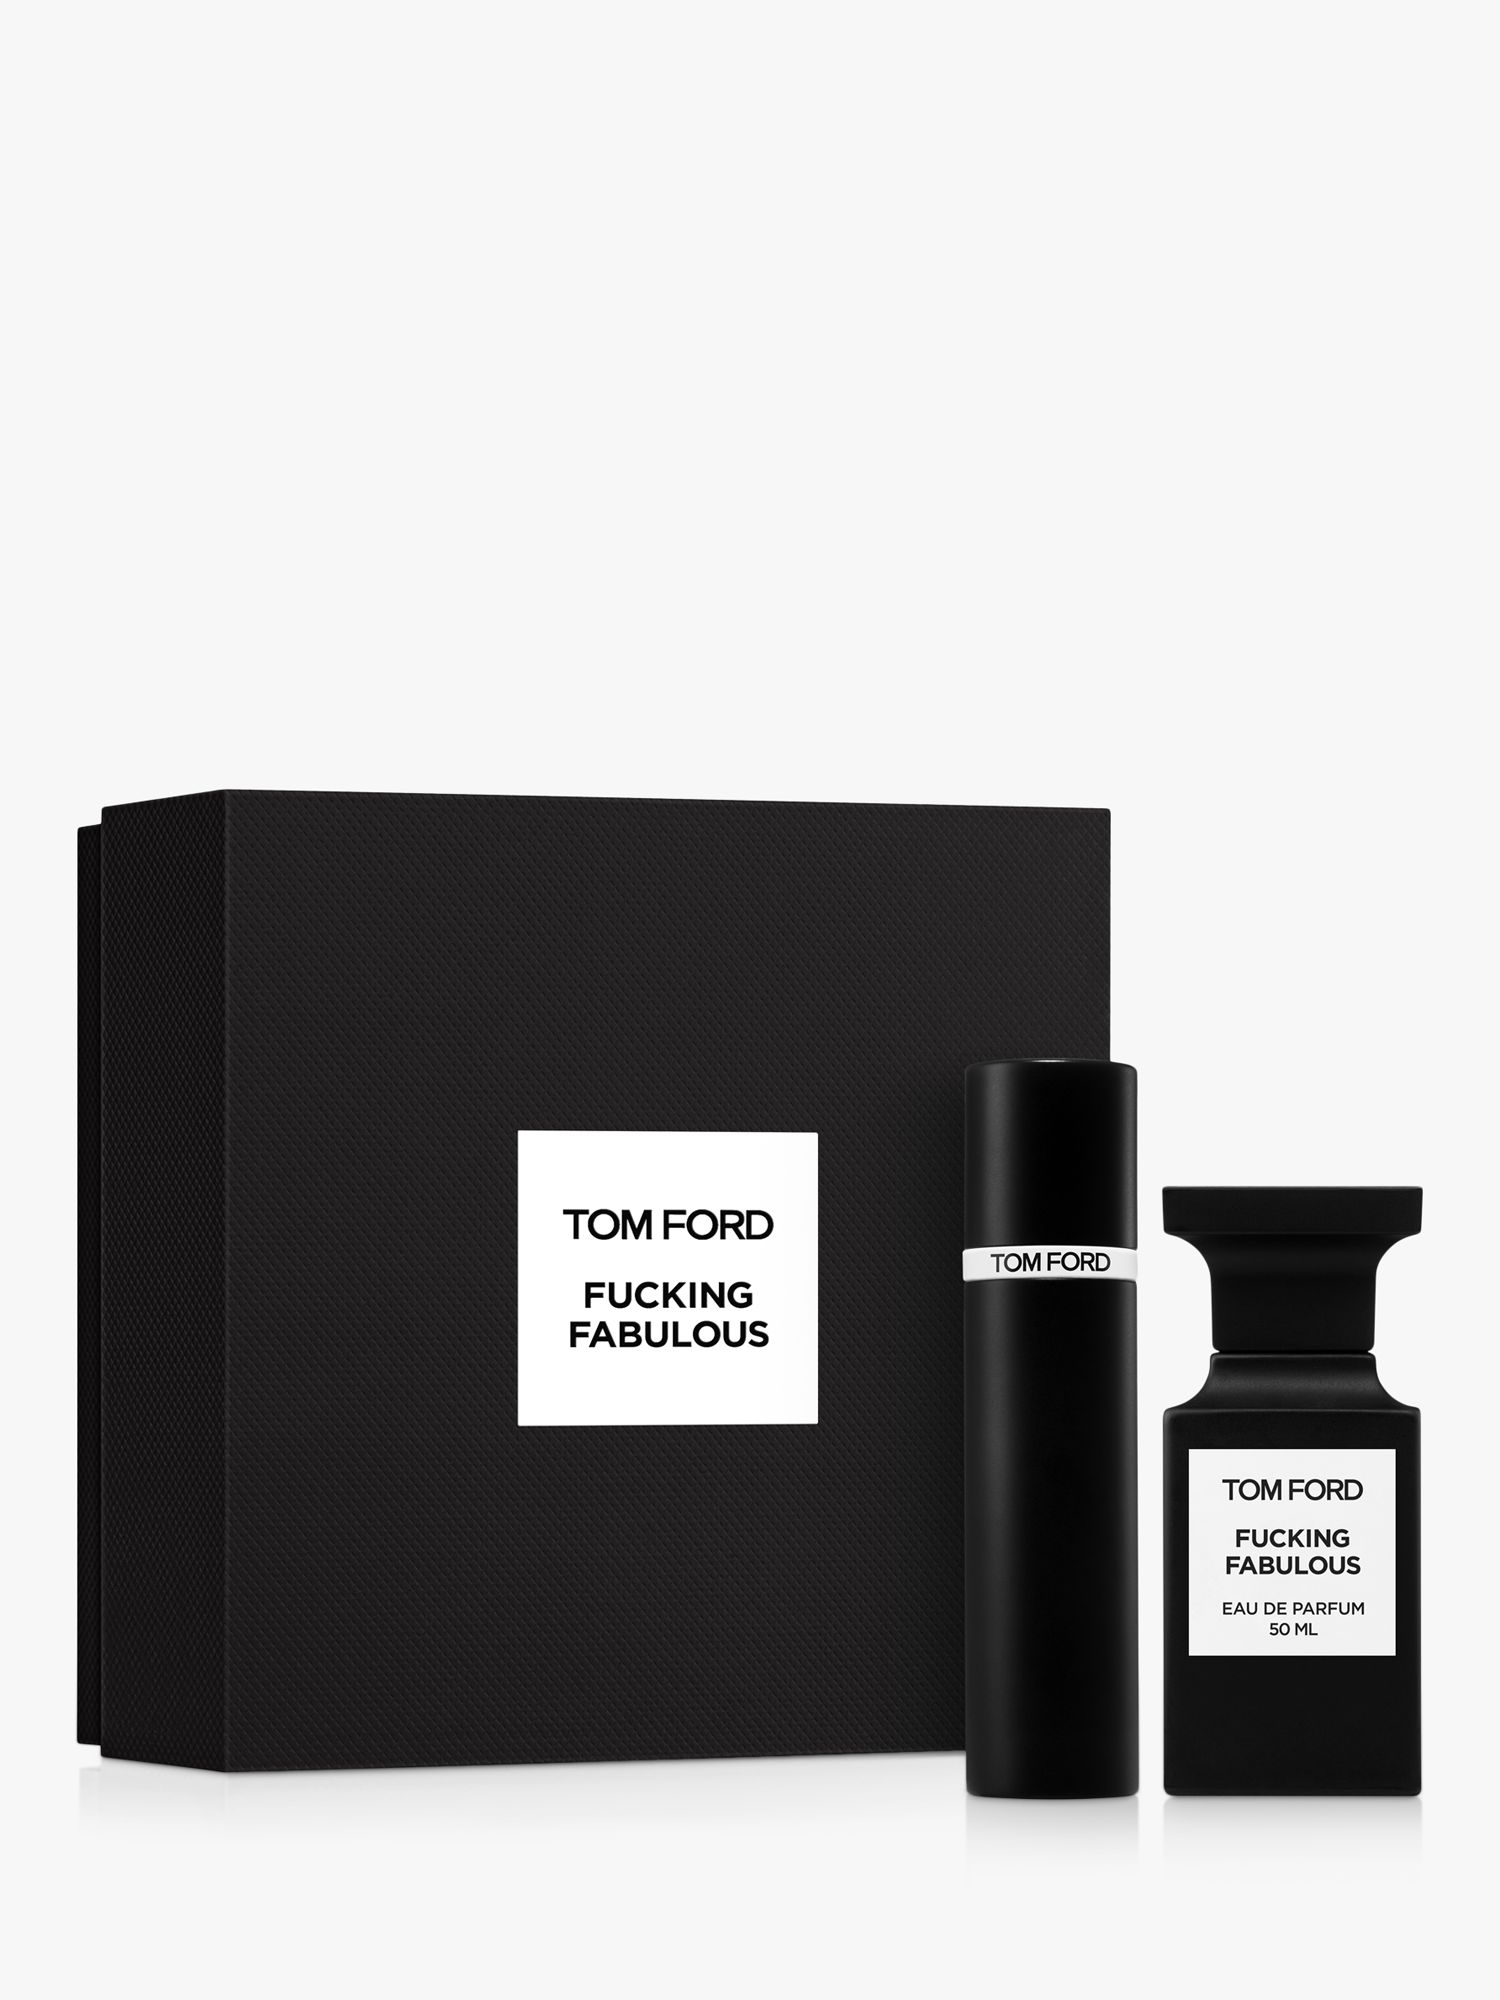 TOM FORD Private Blend Fabulous Eau de Parfum 50ml Fragrance Gift Set